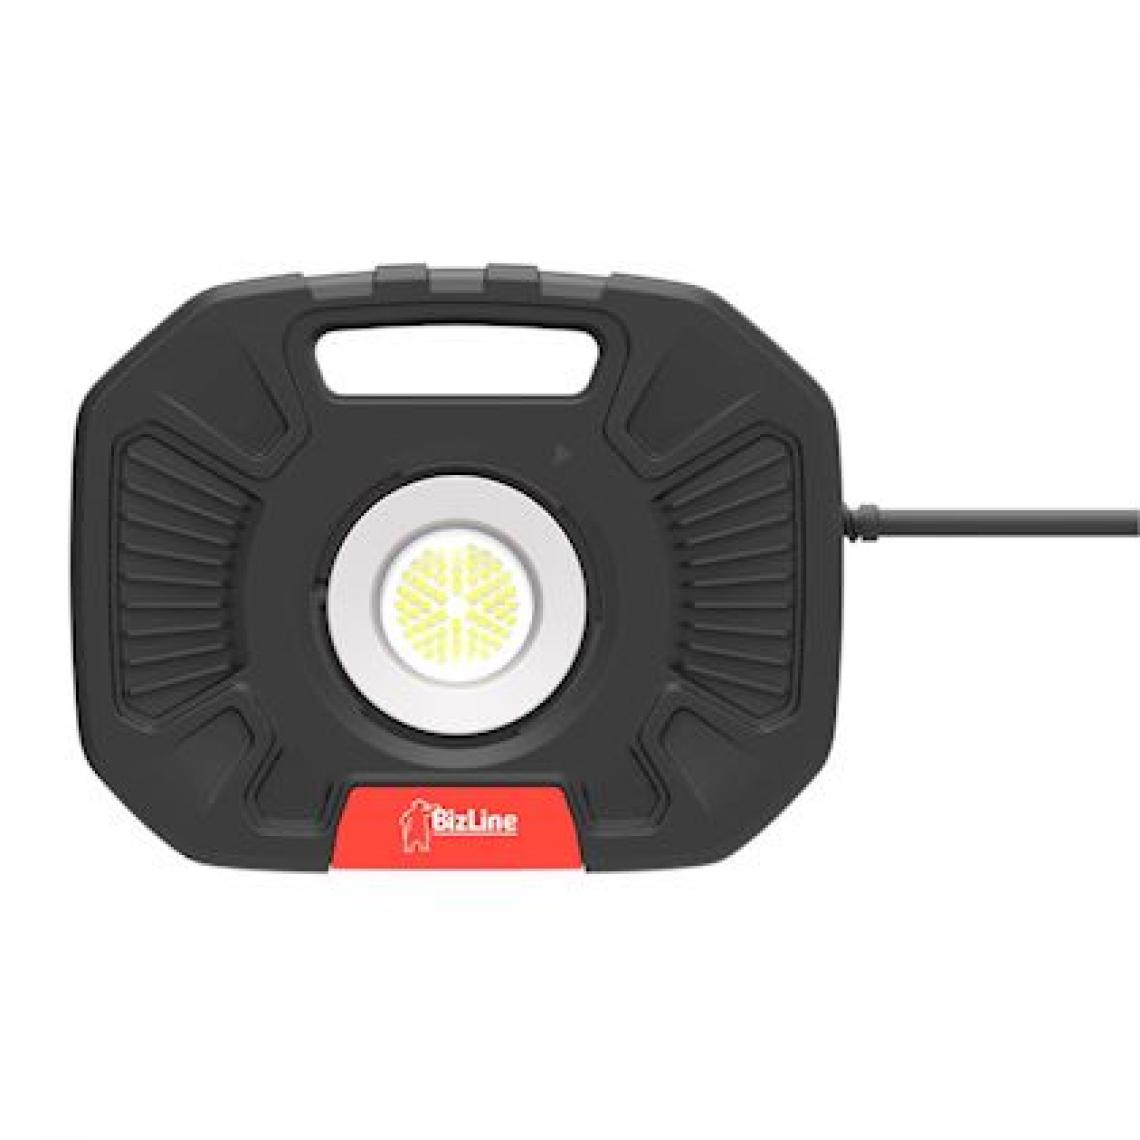 Bizline - projecteur à led - 60 w - dimmable - 230v - robuste - avec prise france - bizline 625040 - Lampes portatives sans fil